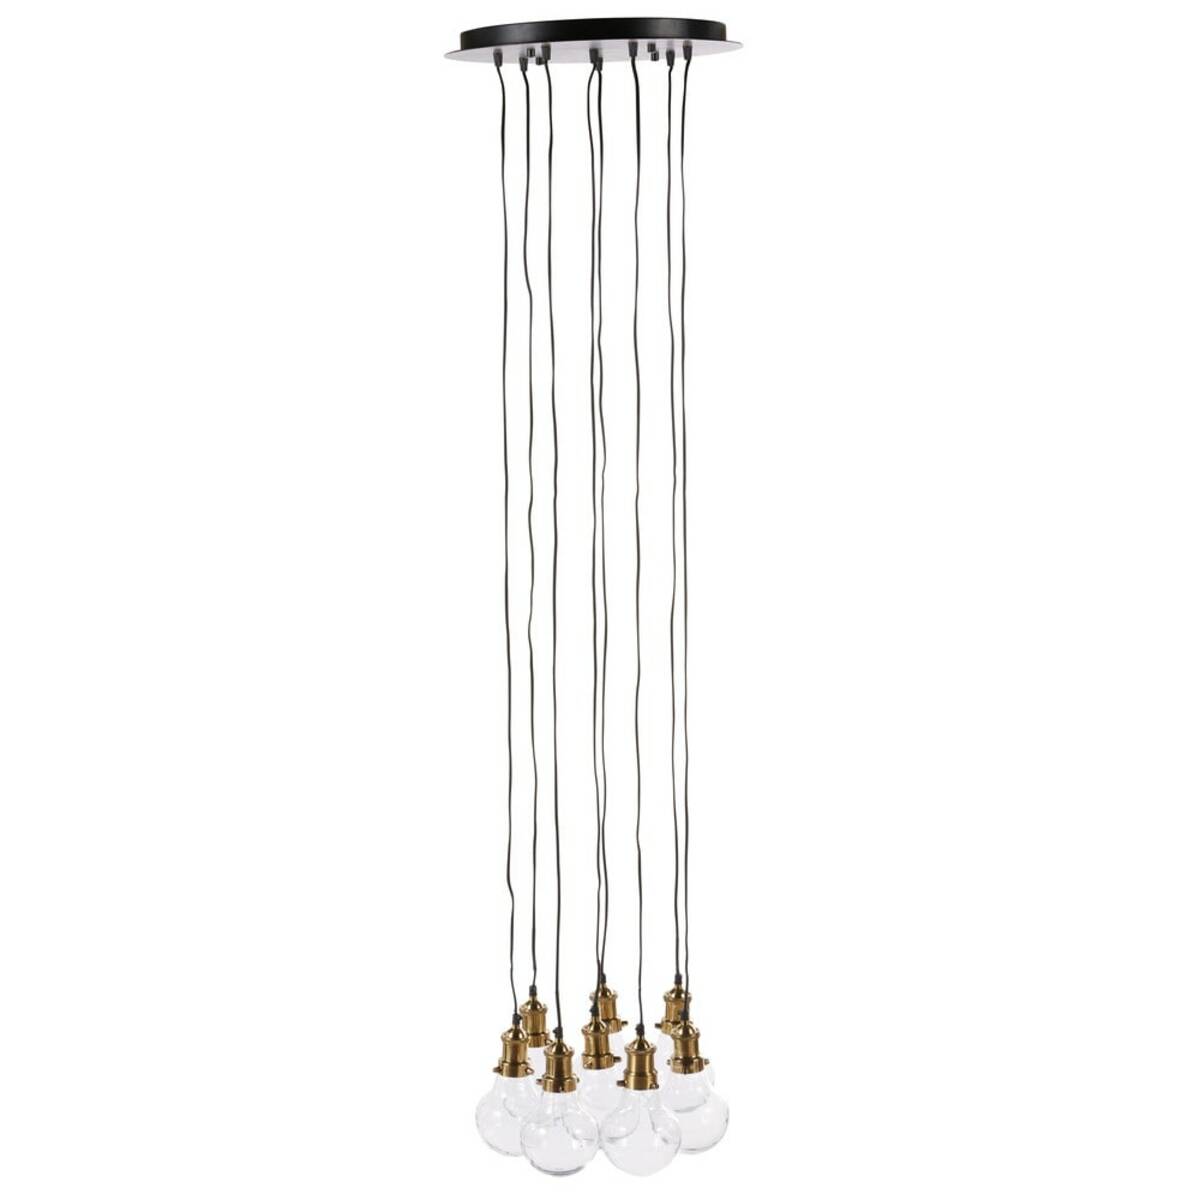 Lámpara de techo con 8 bombillas de cristal y metal dorado